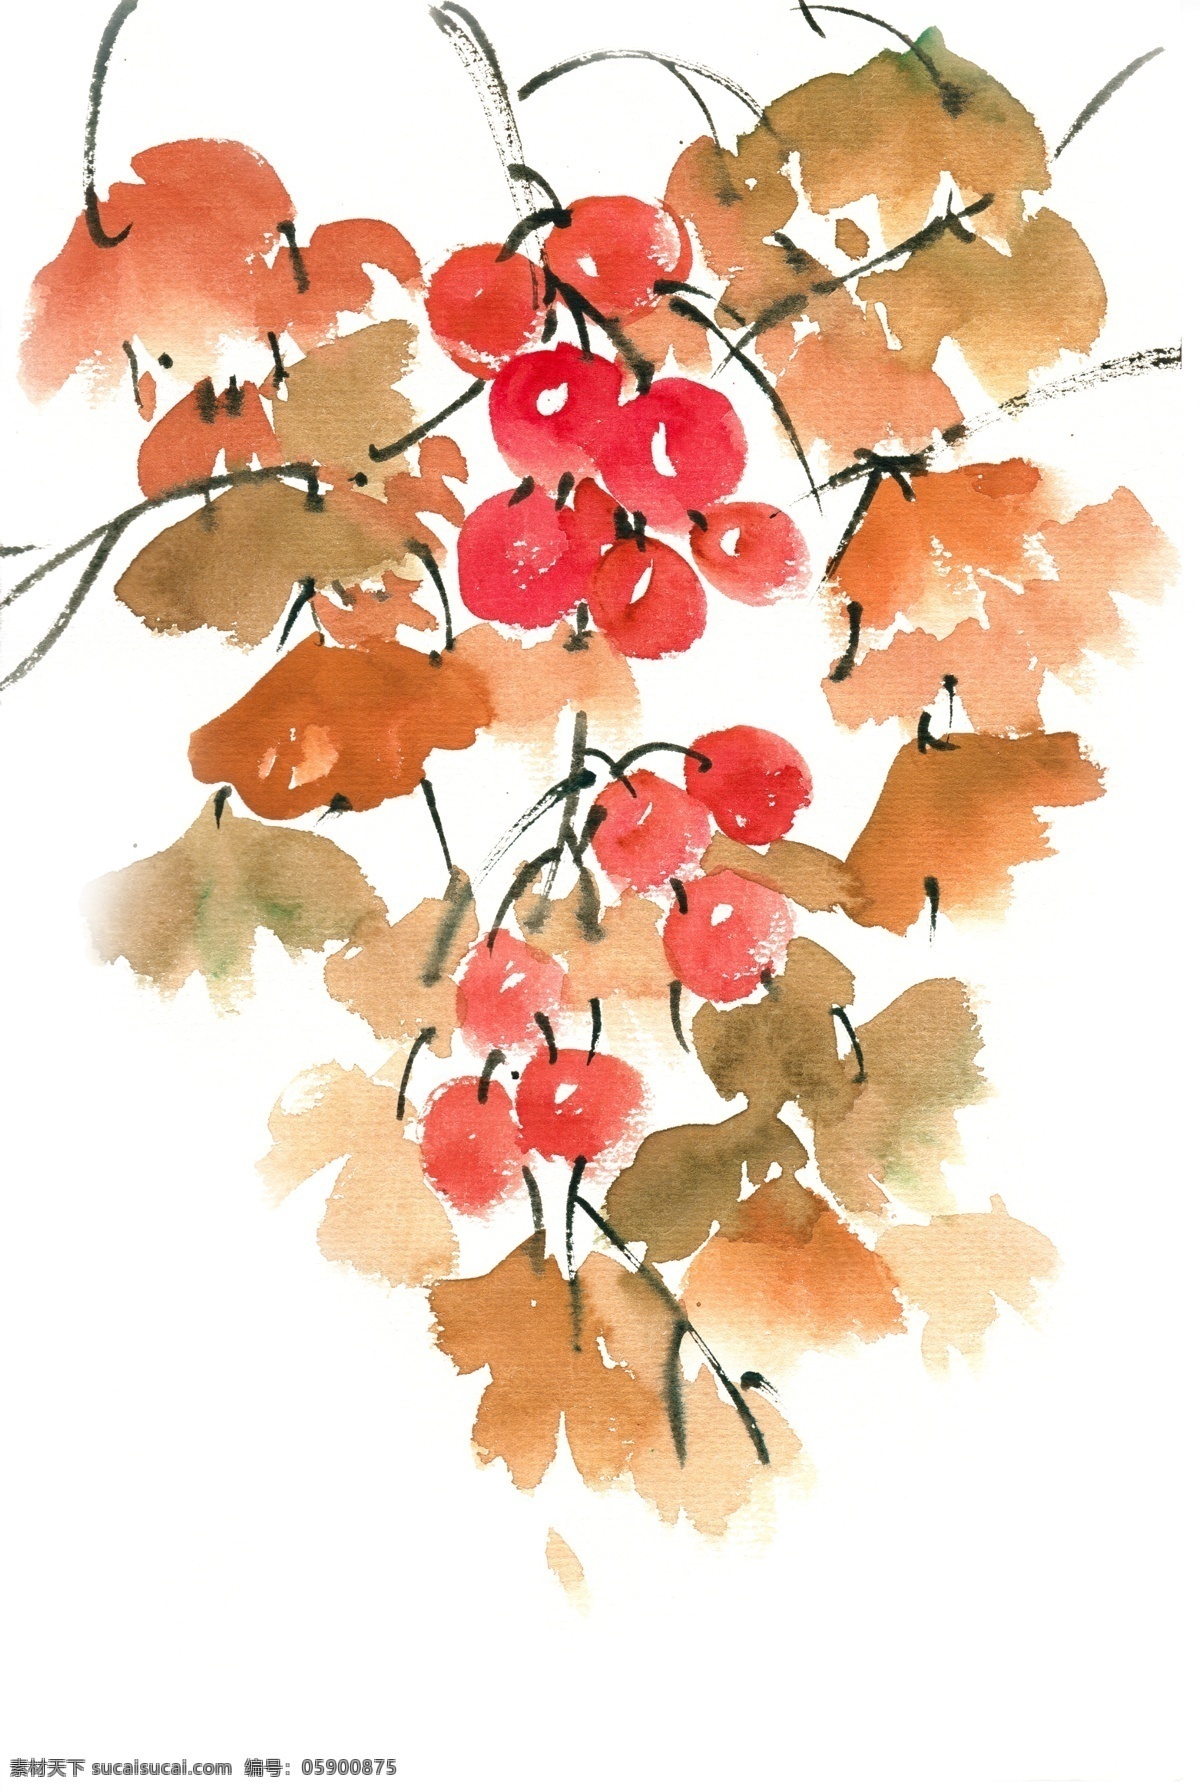 银杏 果实 水彩画 免 抠 水彩 透明 手绘 彩色 生态 红色 叶子 美丽 写意 免抠 亮丽 清幽 意境 绘画 逼真 写实 简约